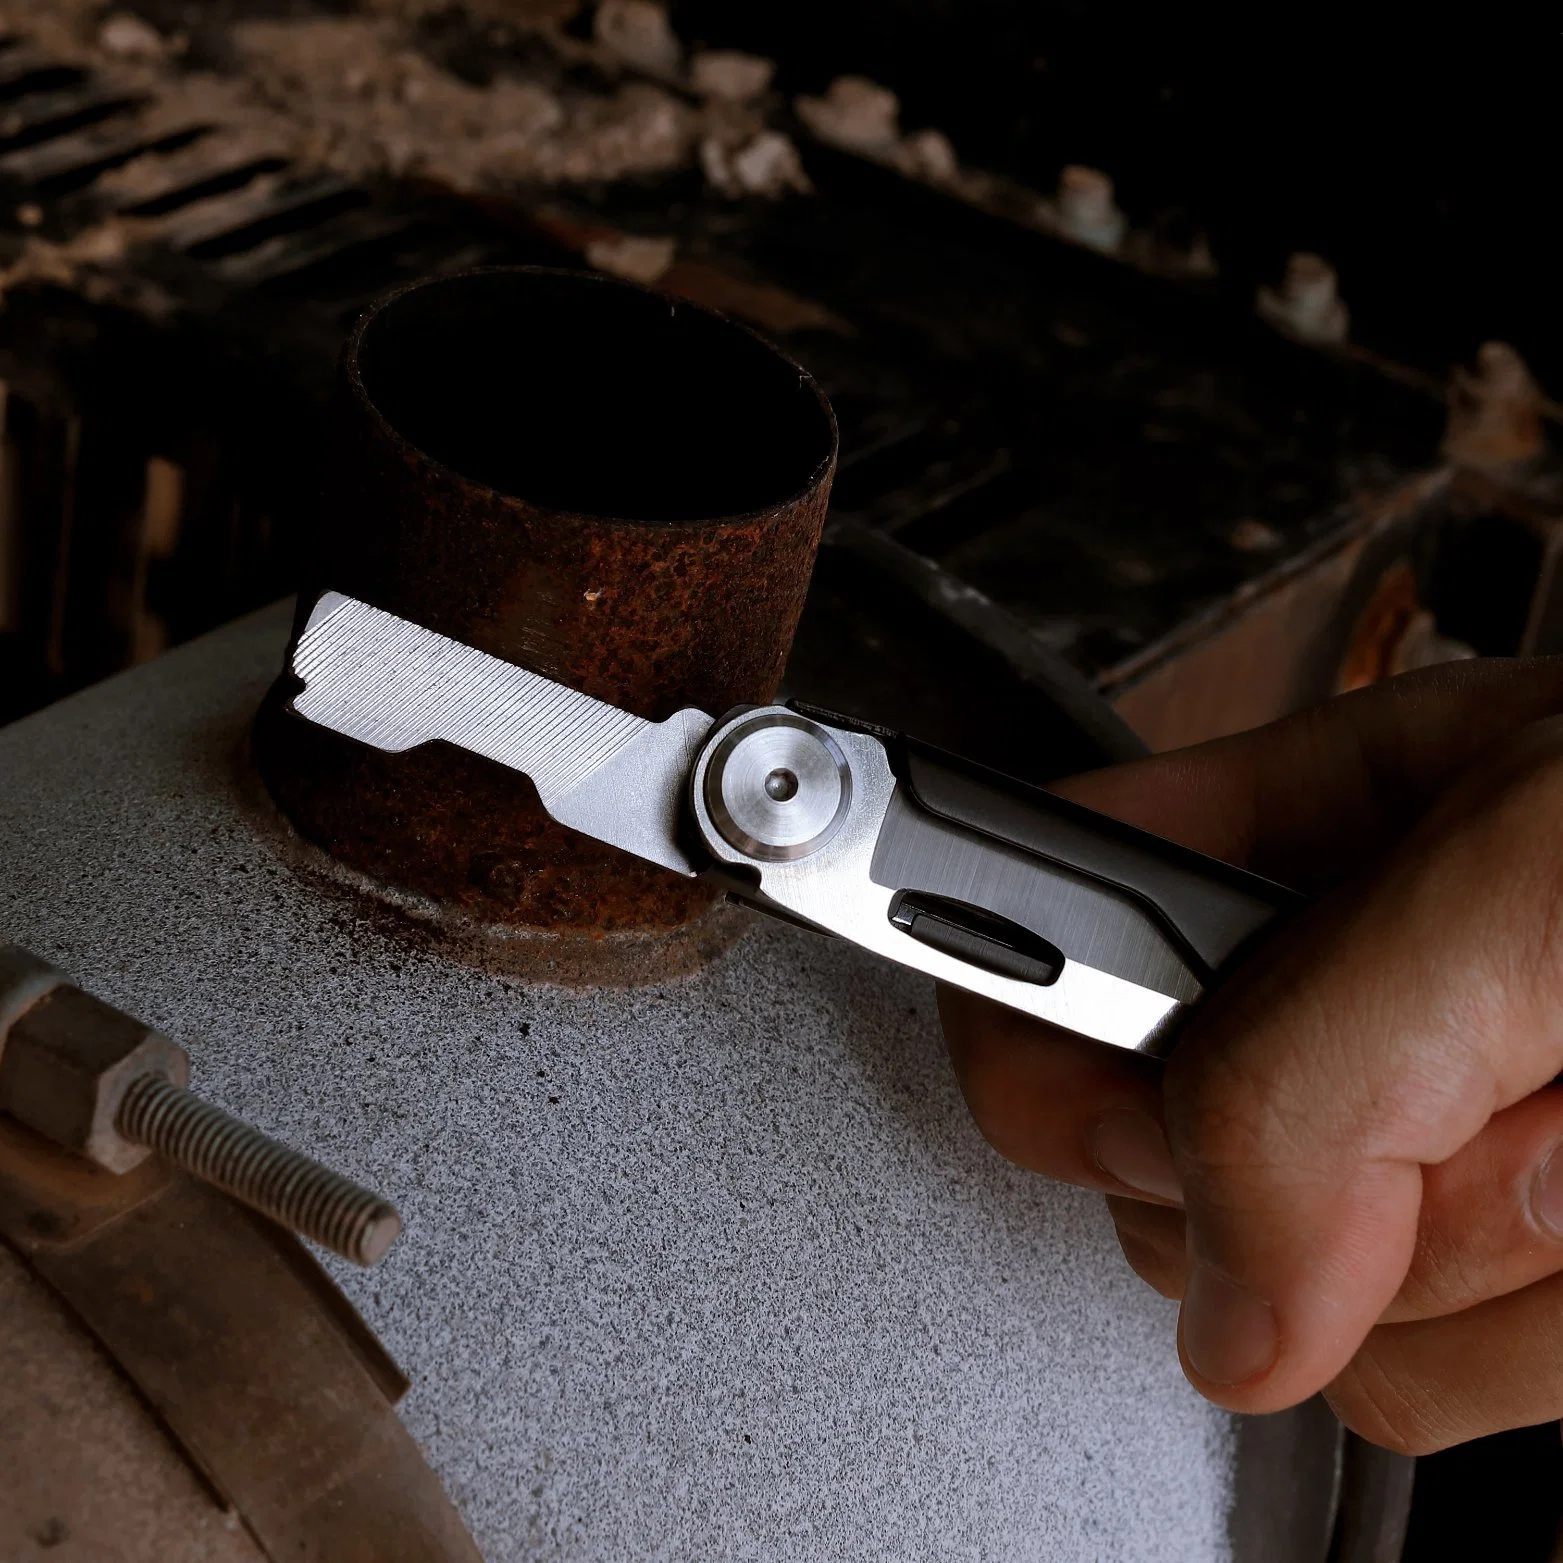 Nextool Hardware Tools Multi Functional Folding Pocket Knife with Ruler